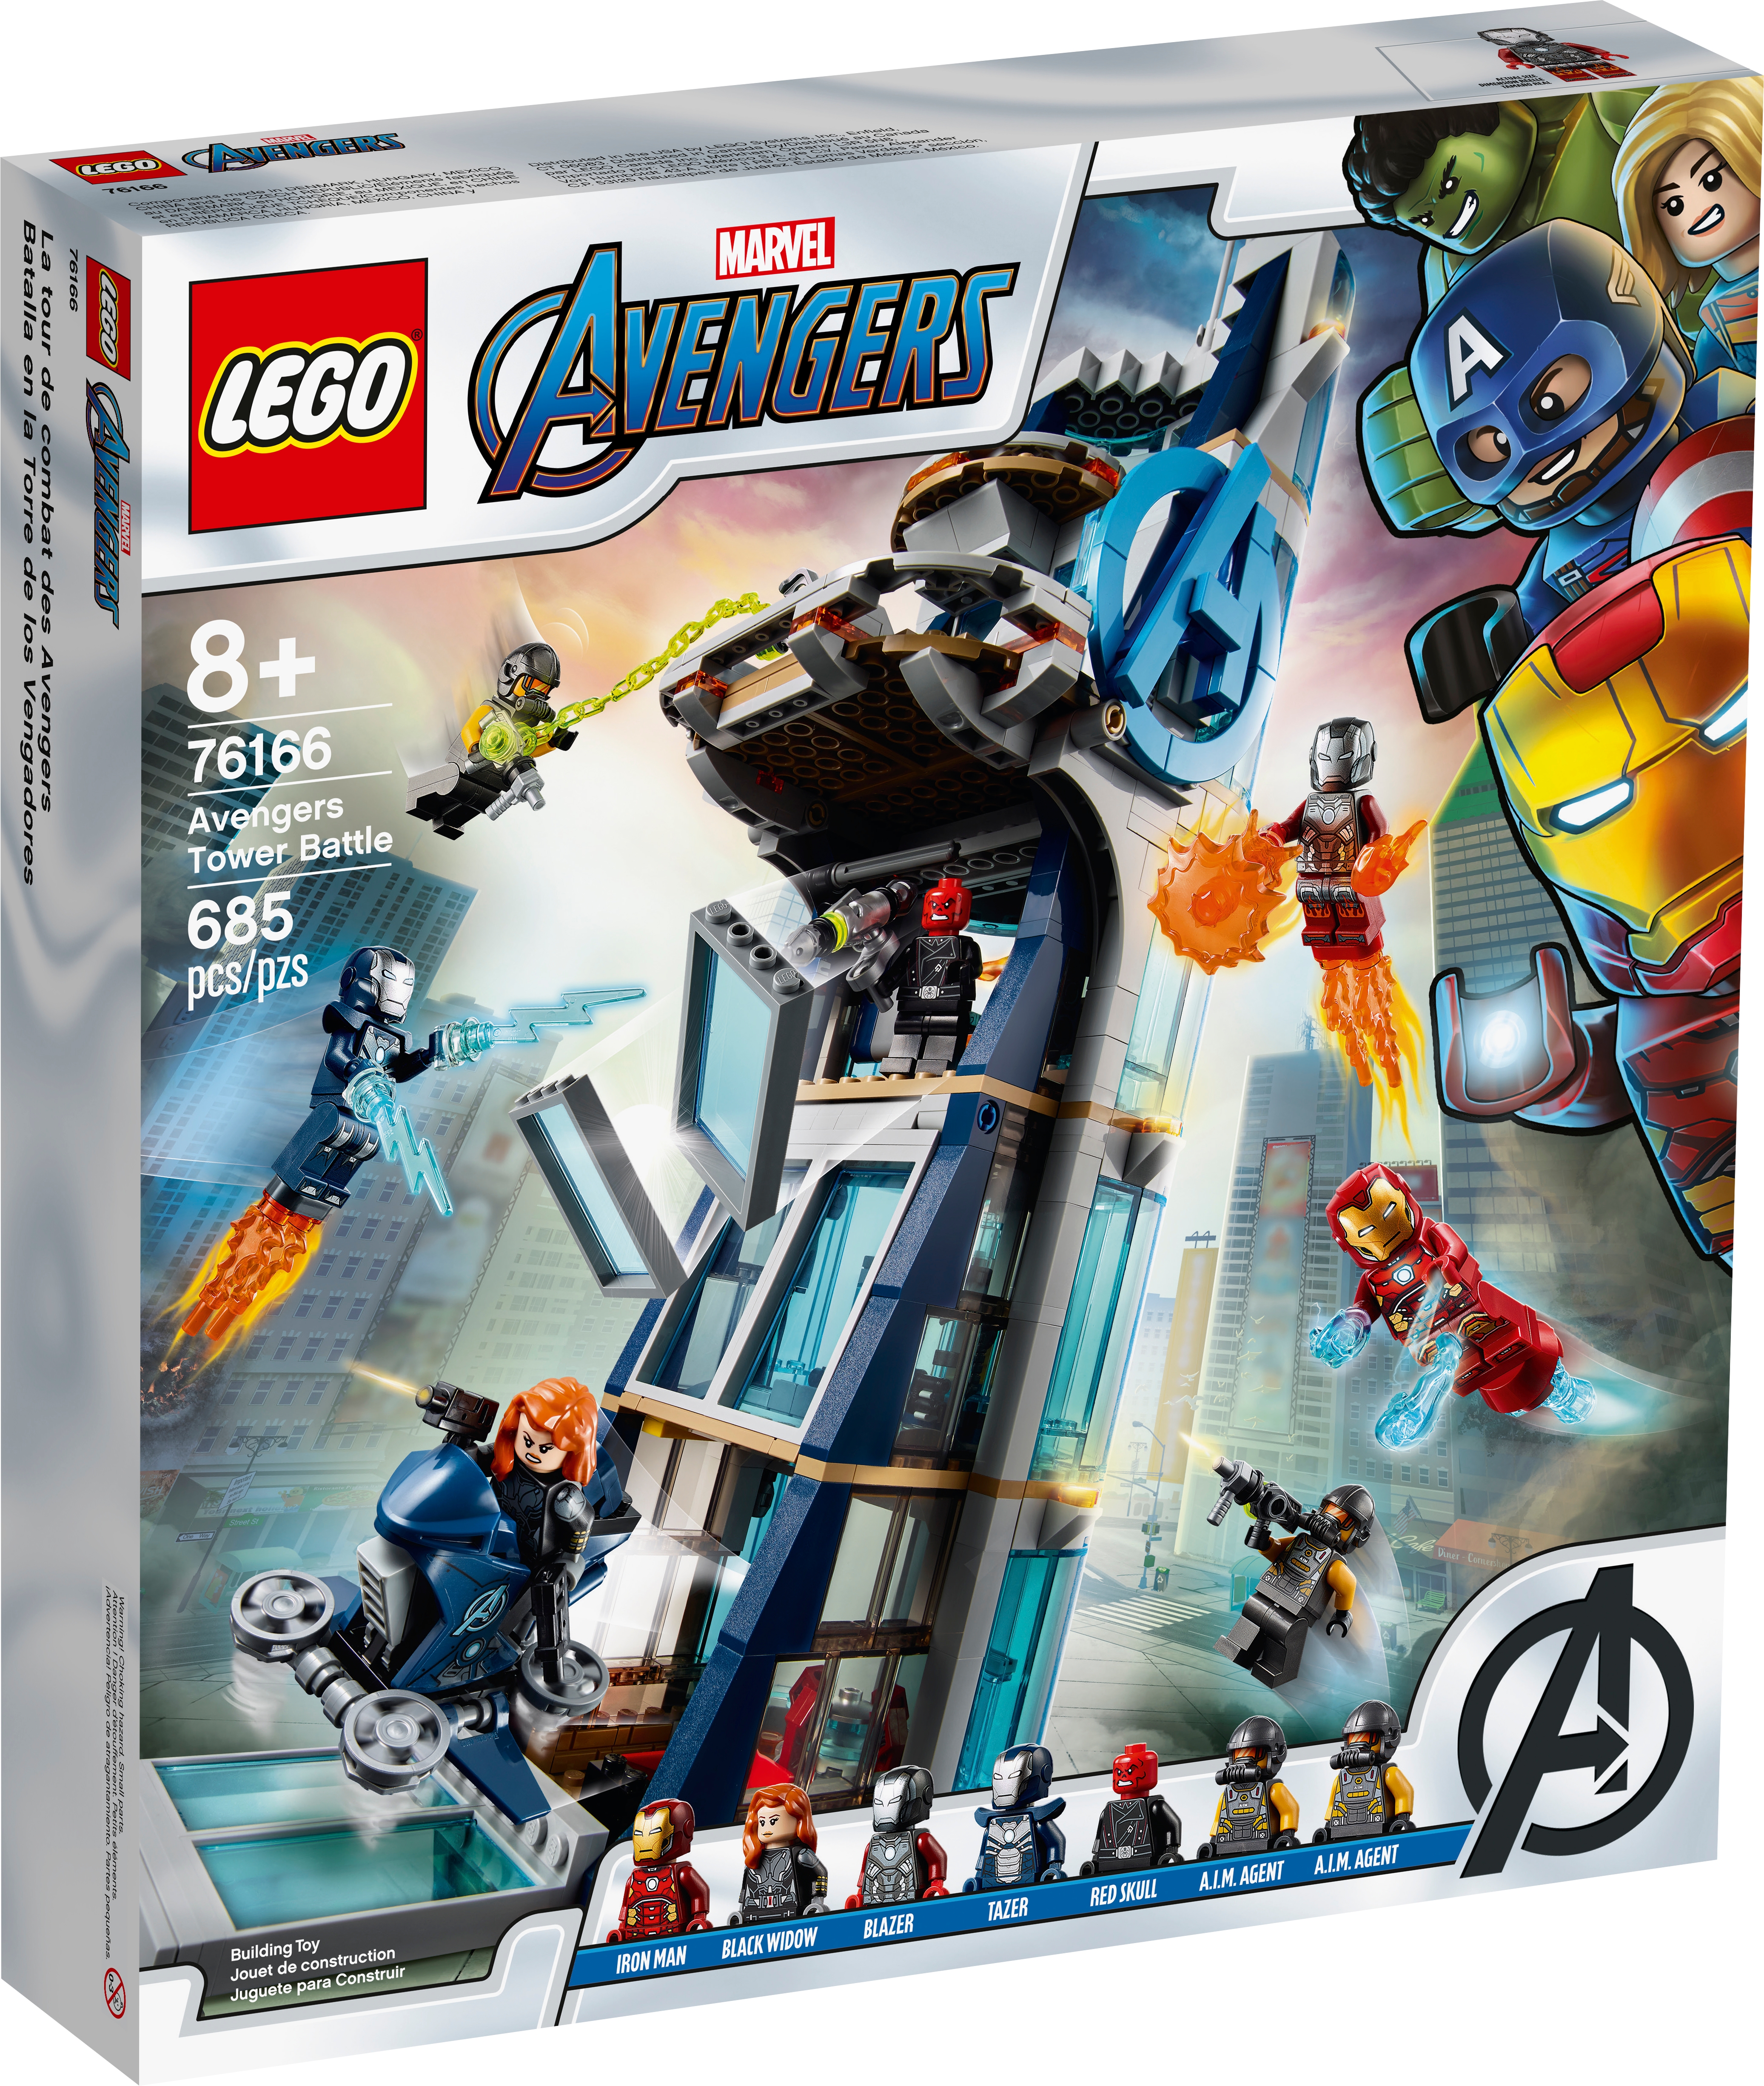 Avengers Tower Battle 76166 | Marvel 